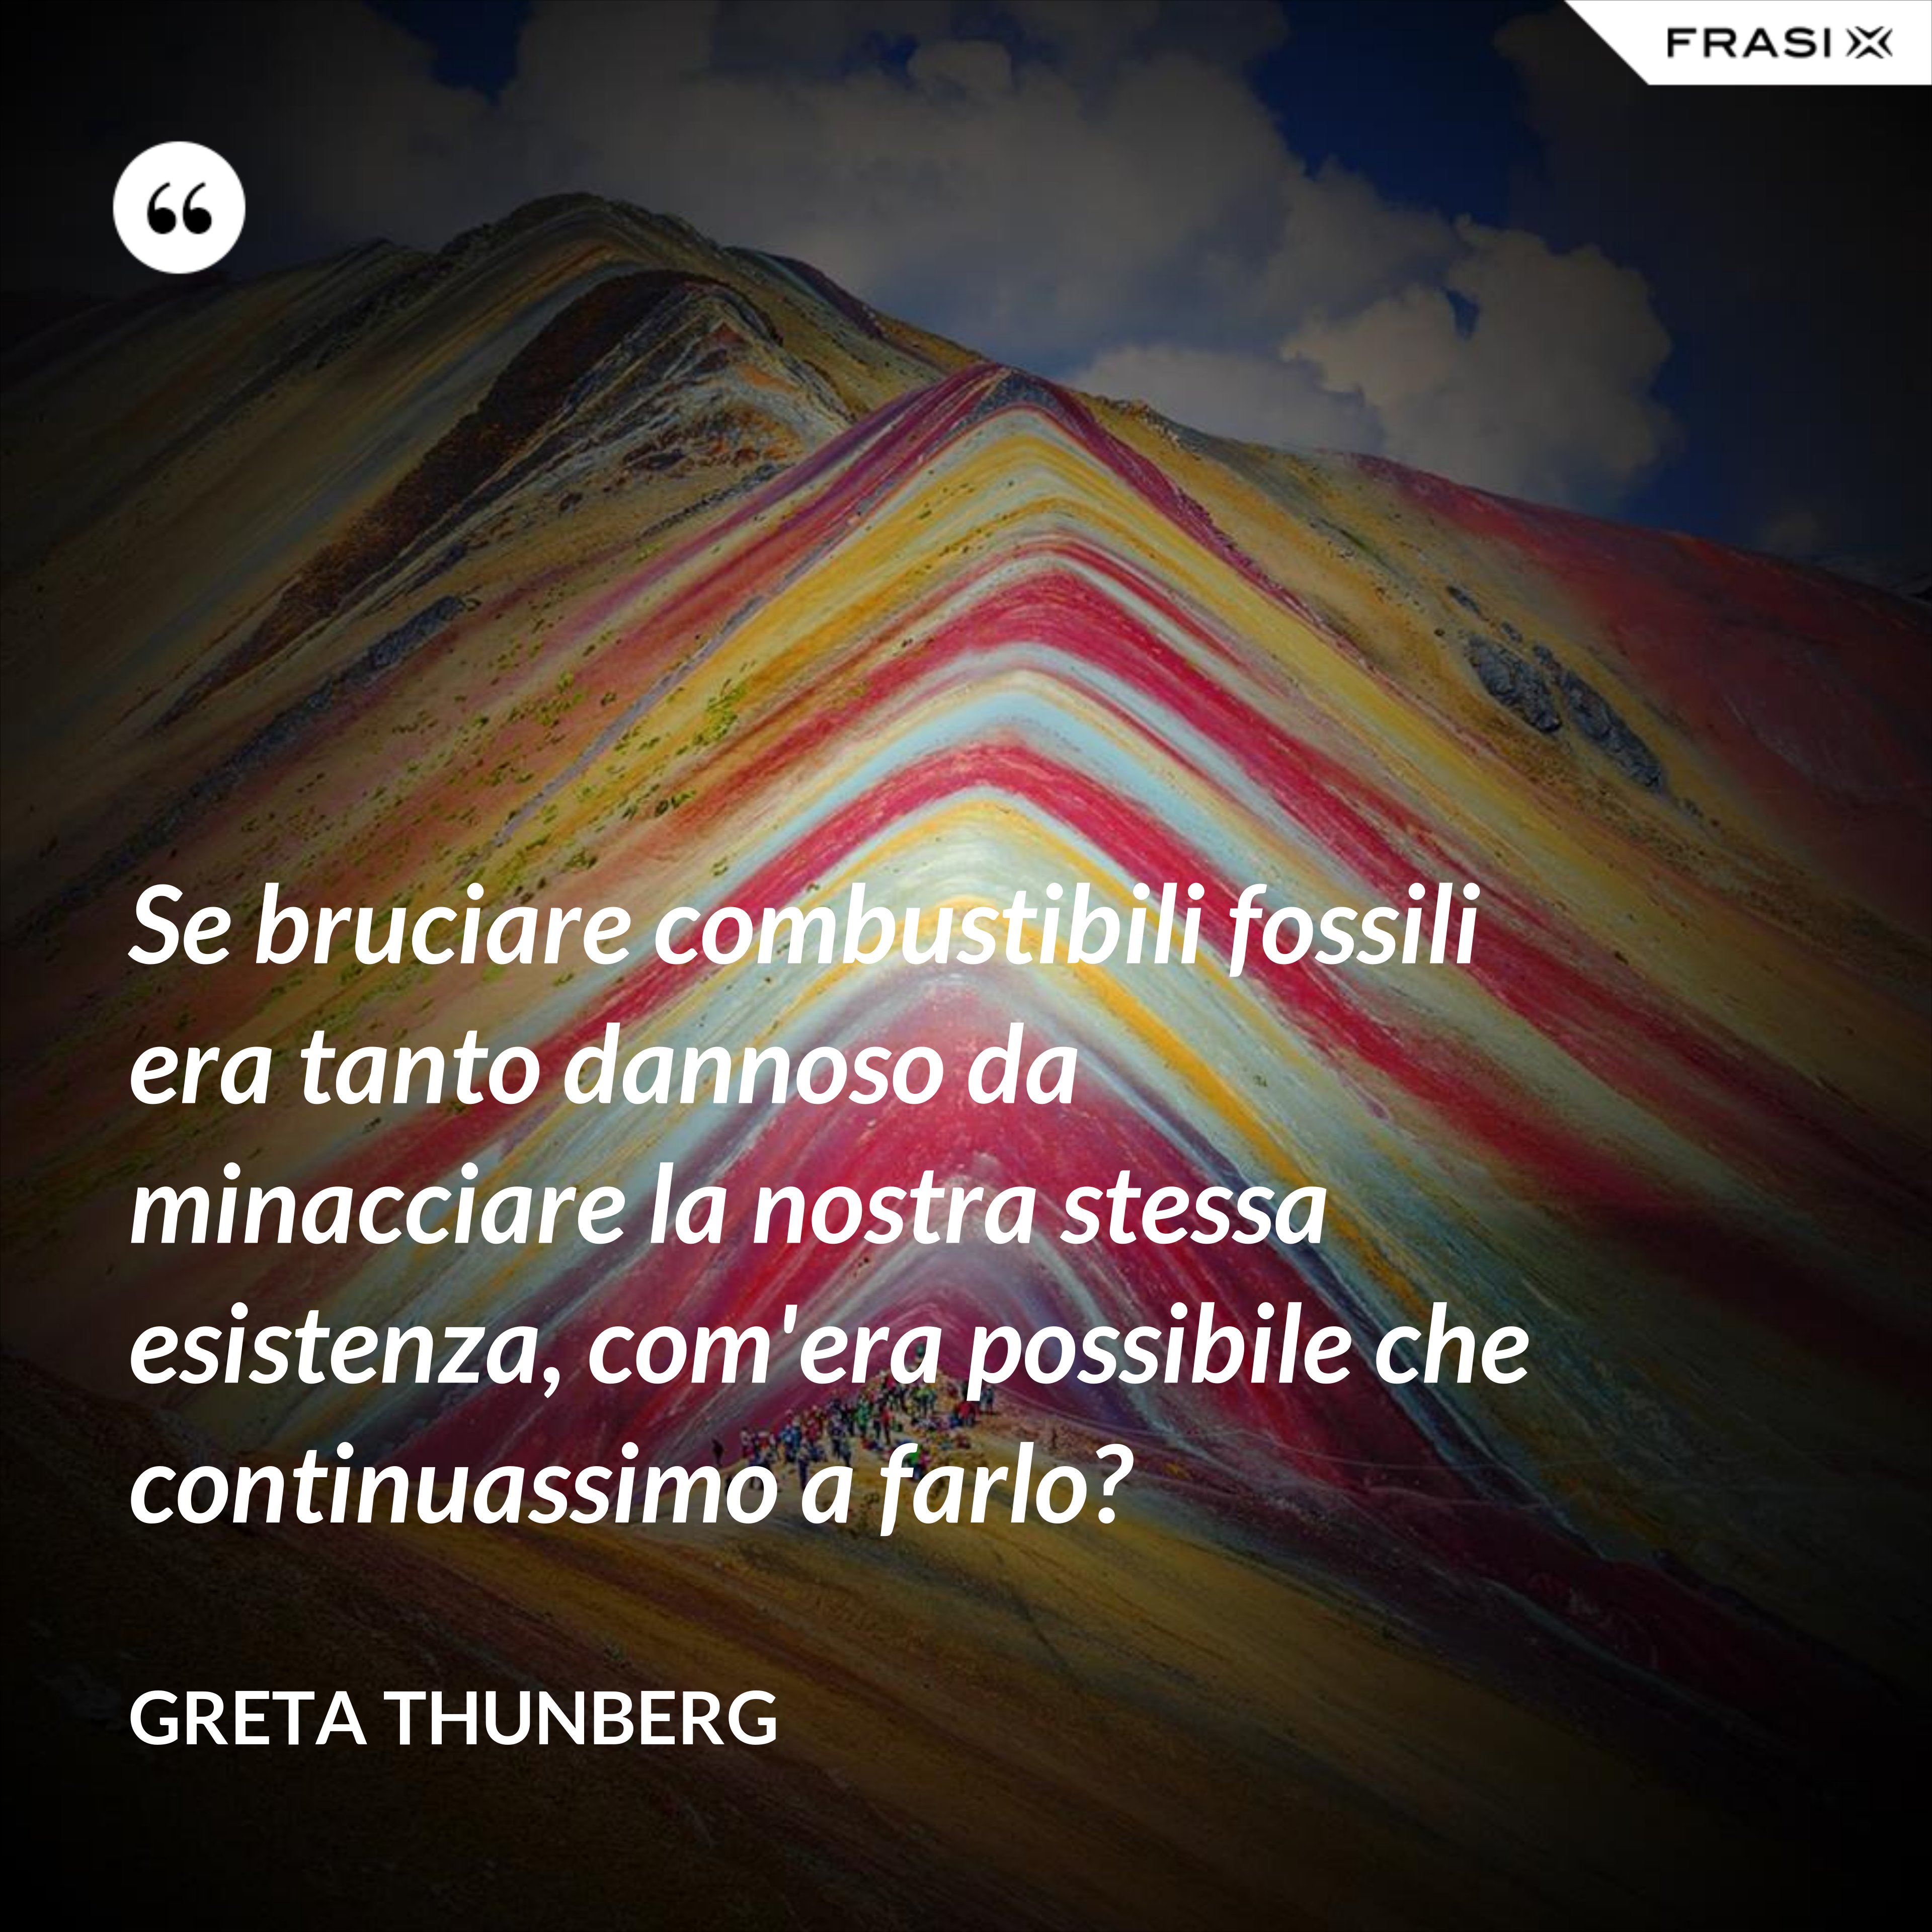 Se bruciare combustibili fossili era tanto dannoso da minacciare la nostra stessa esistenza, com'era possibile che continuassimo a farlo? - Greta Thunberg